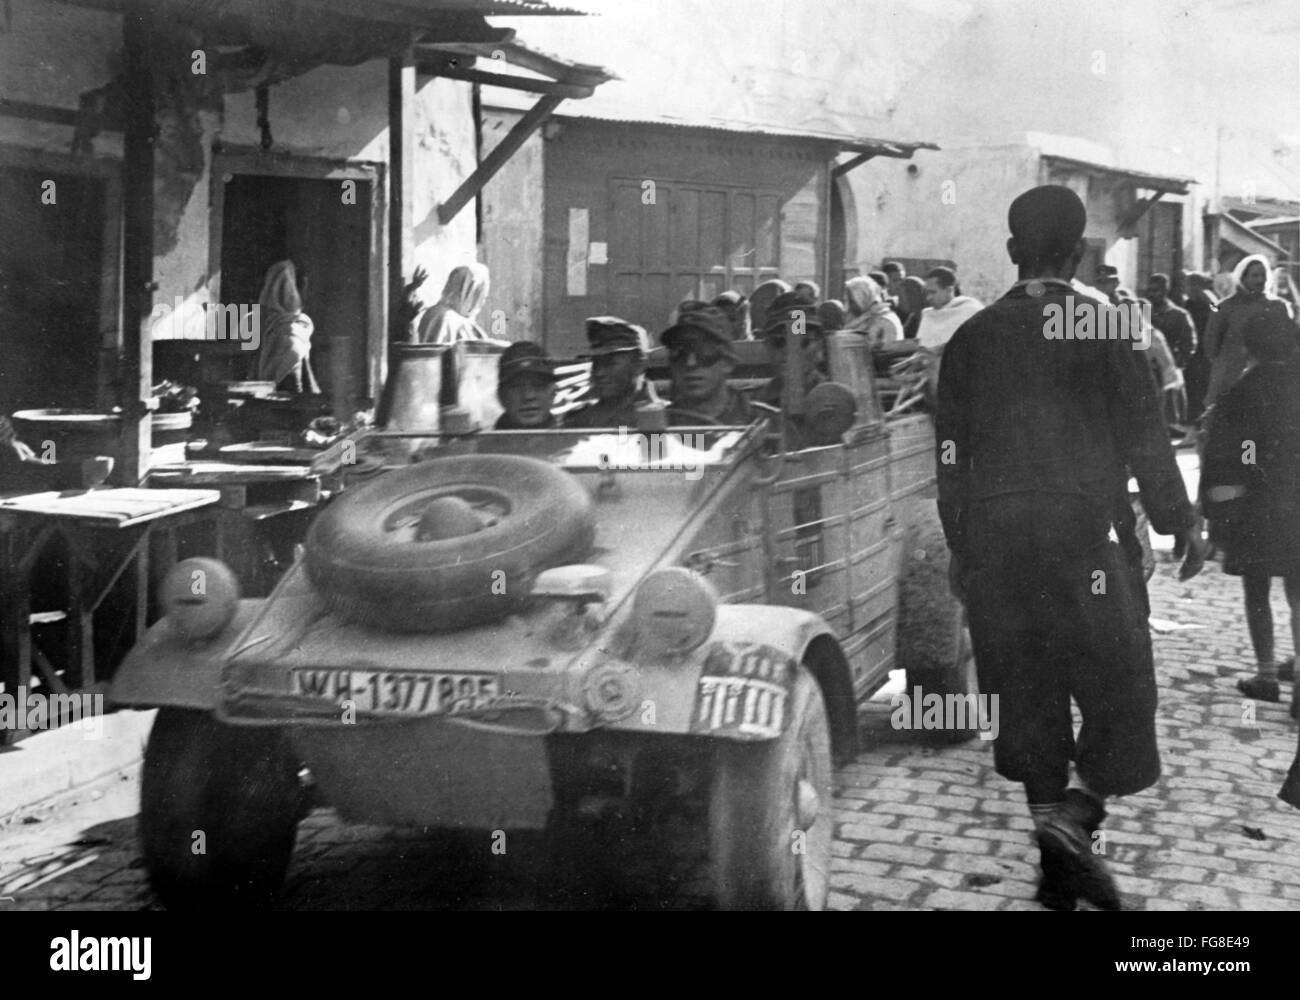 Le tableau de la propagande nazie montre des soldats de la Wehrmacht allemande dans une Volkswagen Type 83 (Kuebelwagen) dans la ville occupée Tunis, Tunisie. La photo a été publiée en février 1943. Fotoarchiv für Zeitgeschichtee - PAS DE SERVICE DE VIREMENT - Banque D'Images